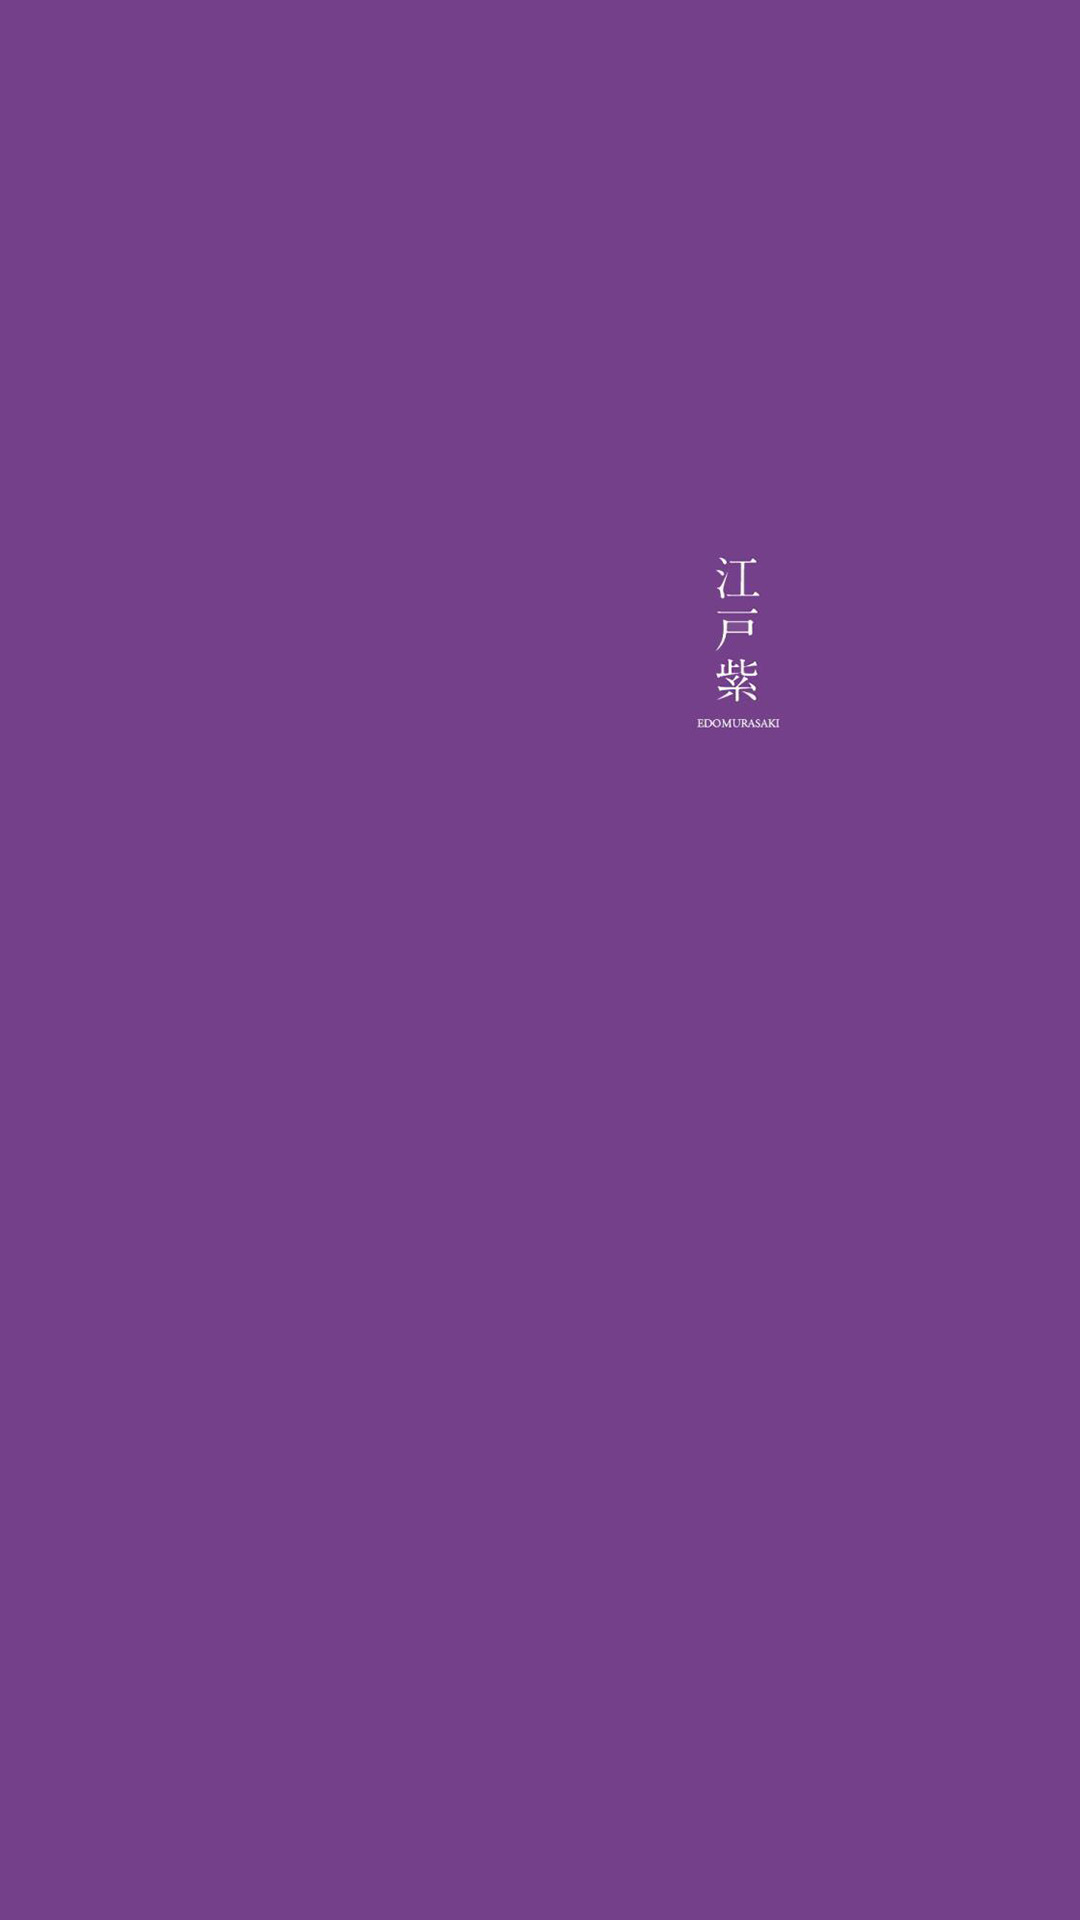 紫色系纯色背景手机壁纸